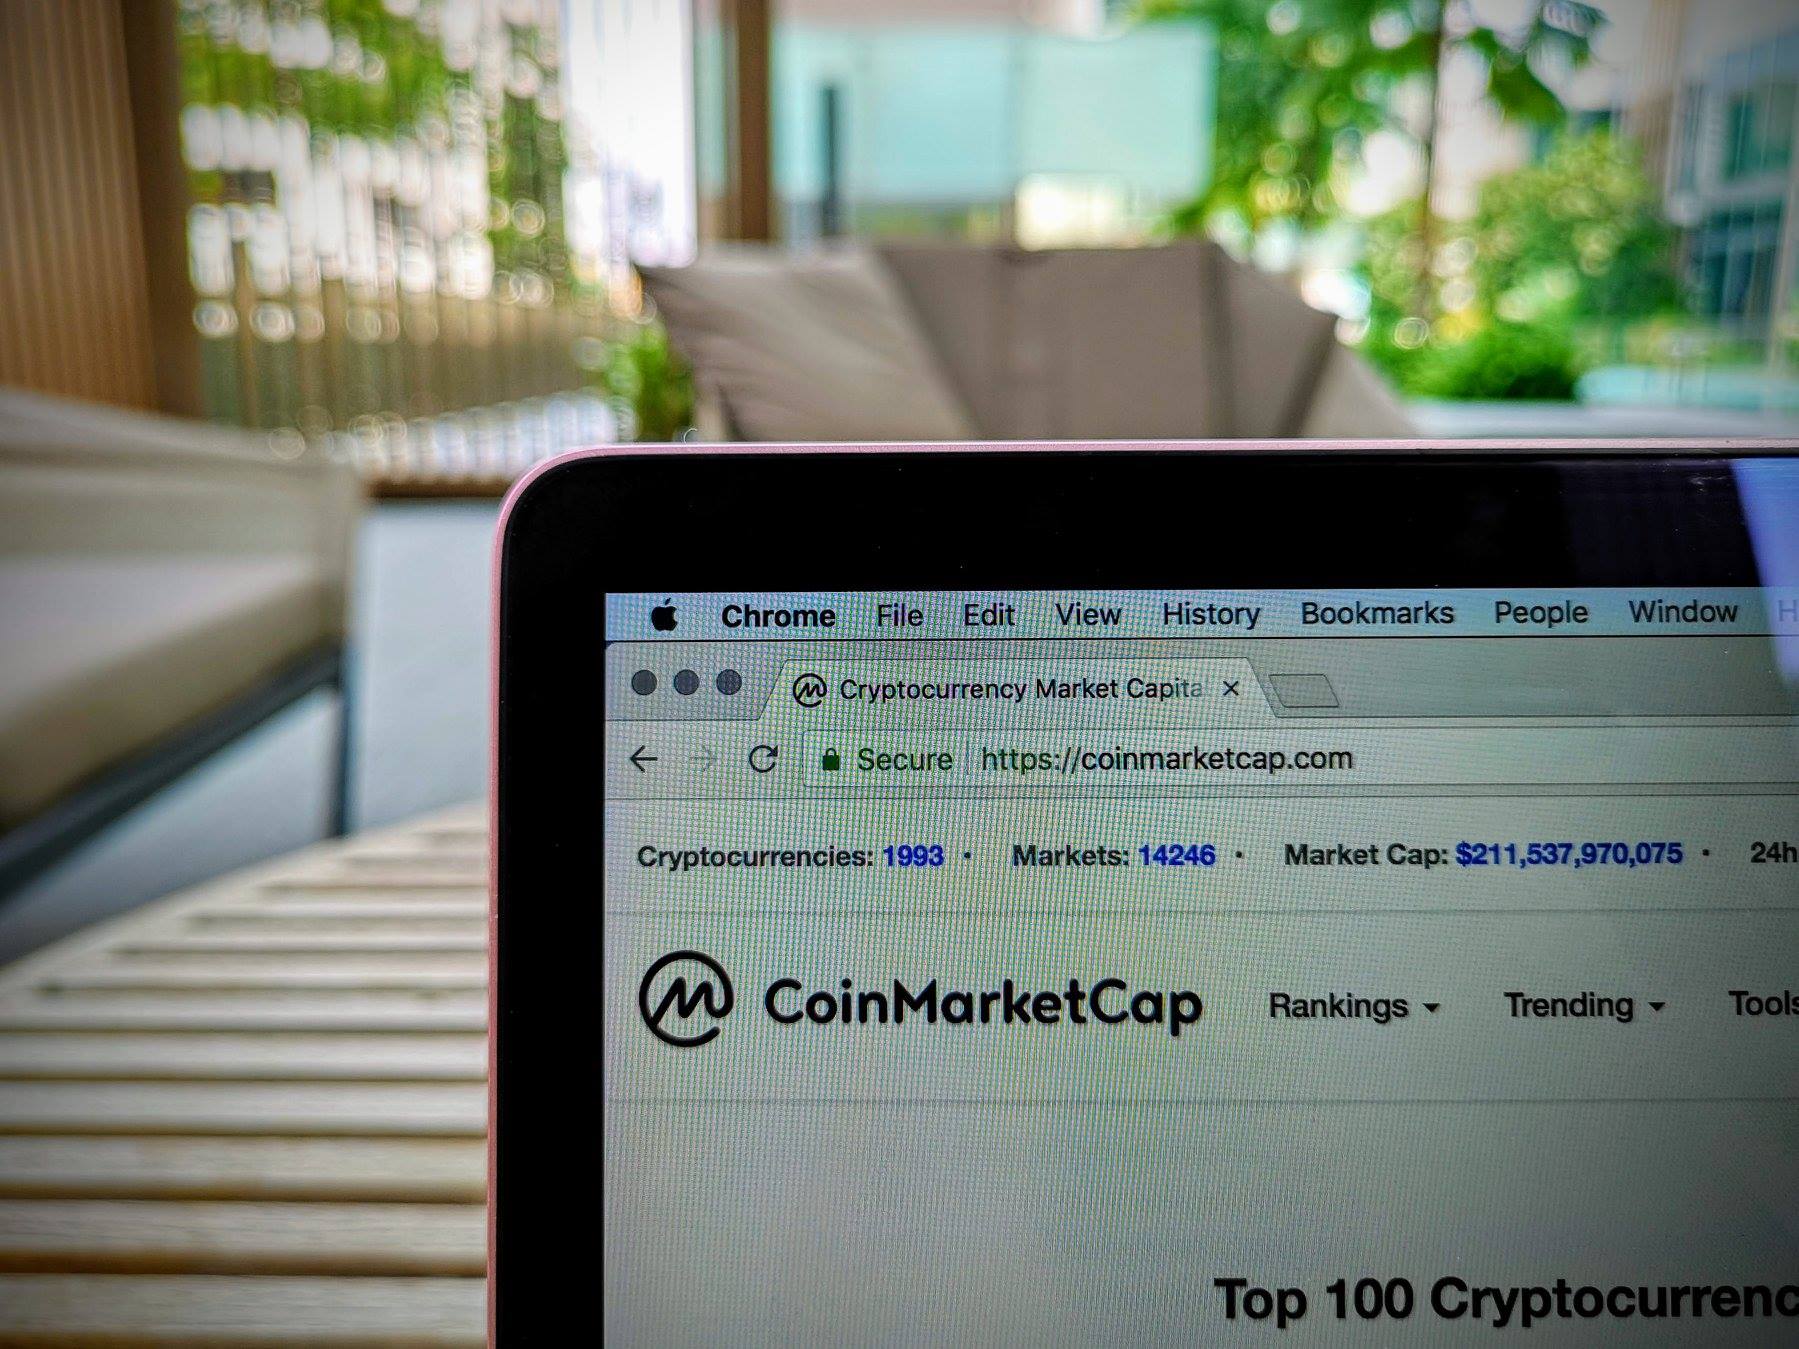 CoinMarketCap thành lập “liên minh sàn giao dịch” để chống lại vấn nạn volume ảo